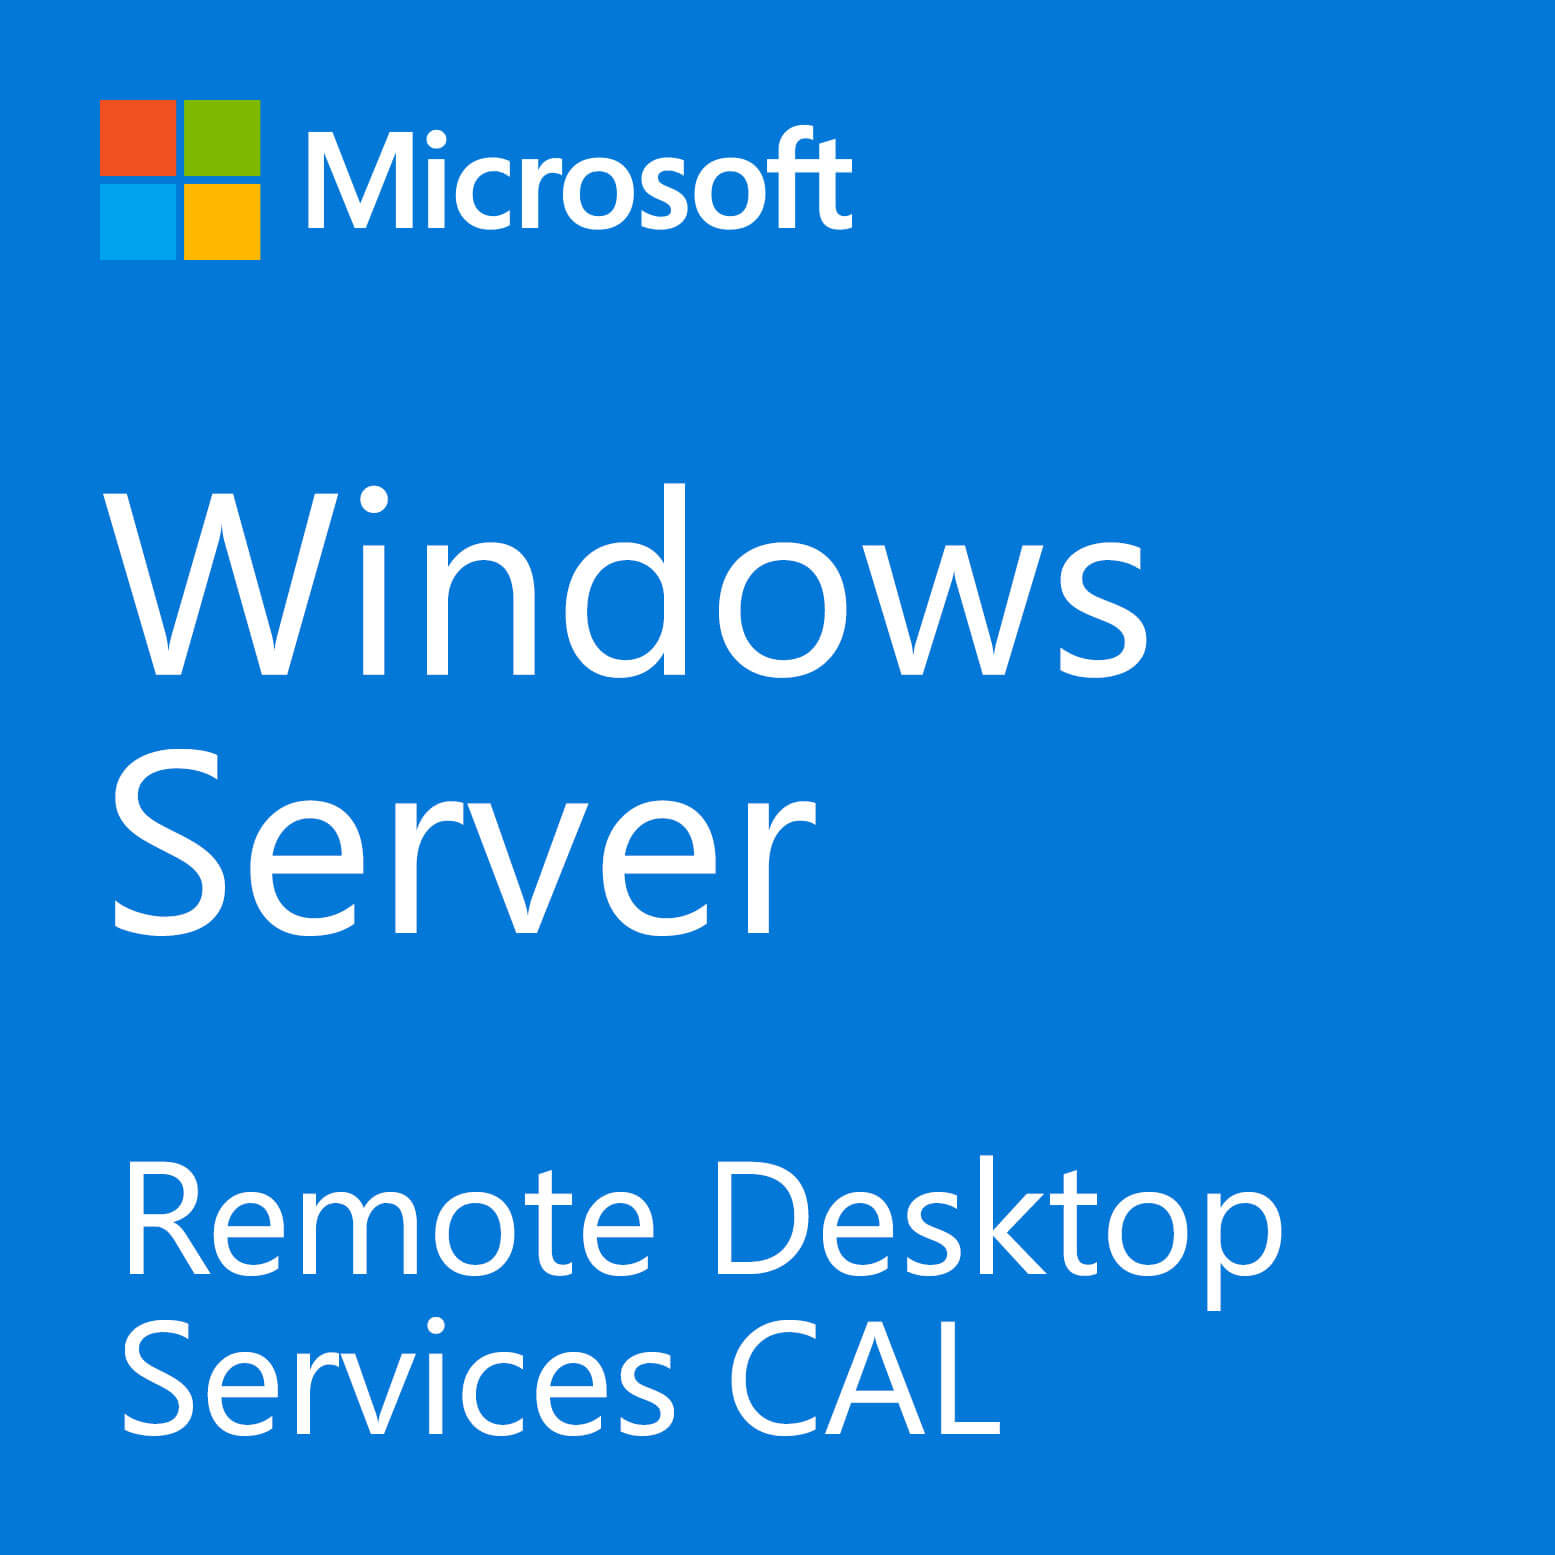 ＜マイクロソフト＞ Windows Server 2019 リモート デスクトップ サーバー CAL - 5 パックのデバイス CAL